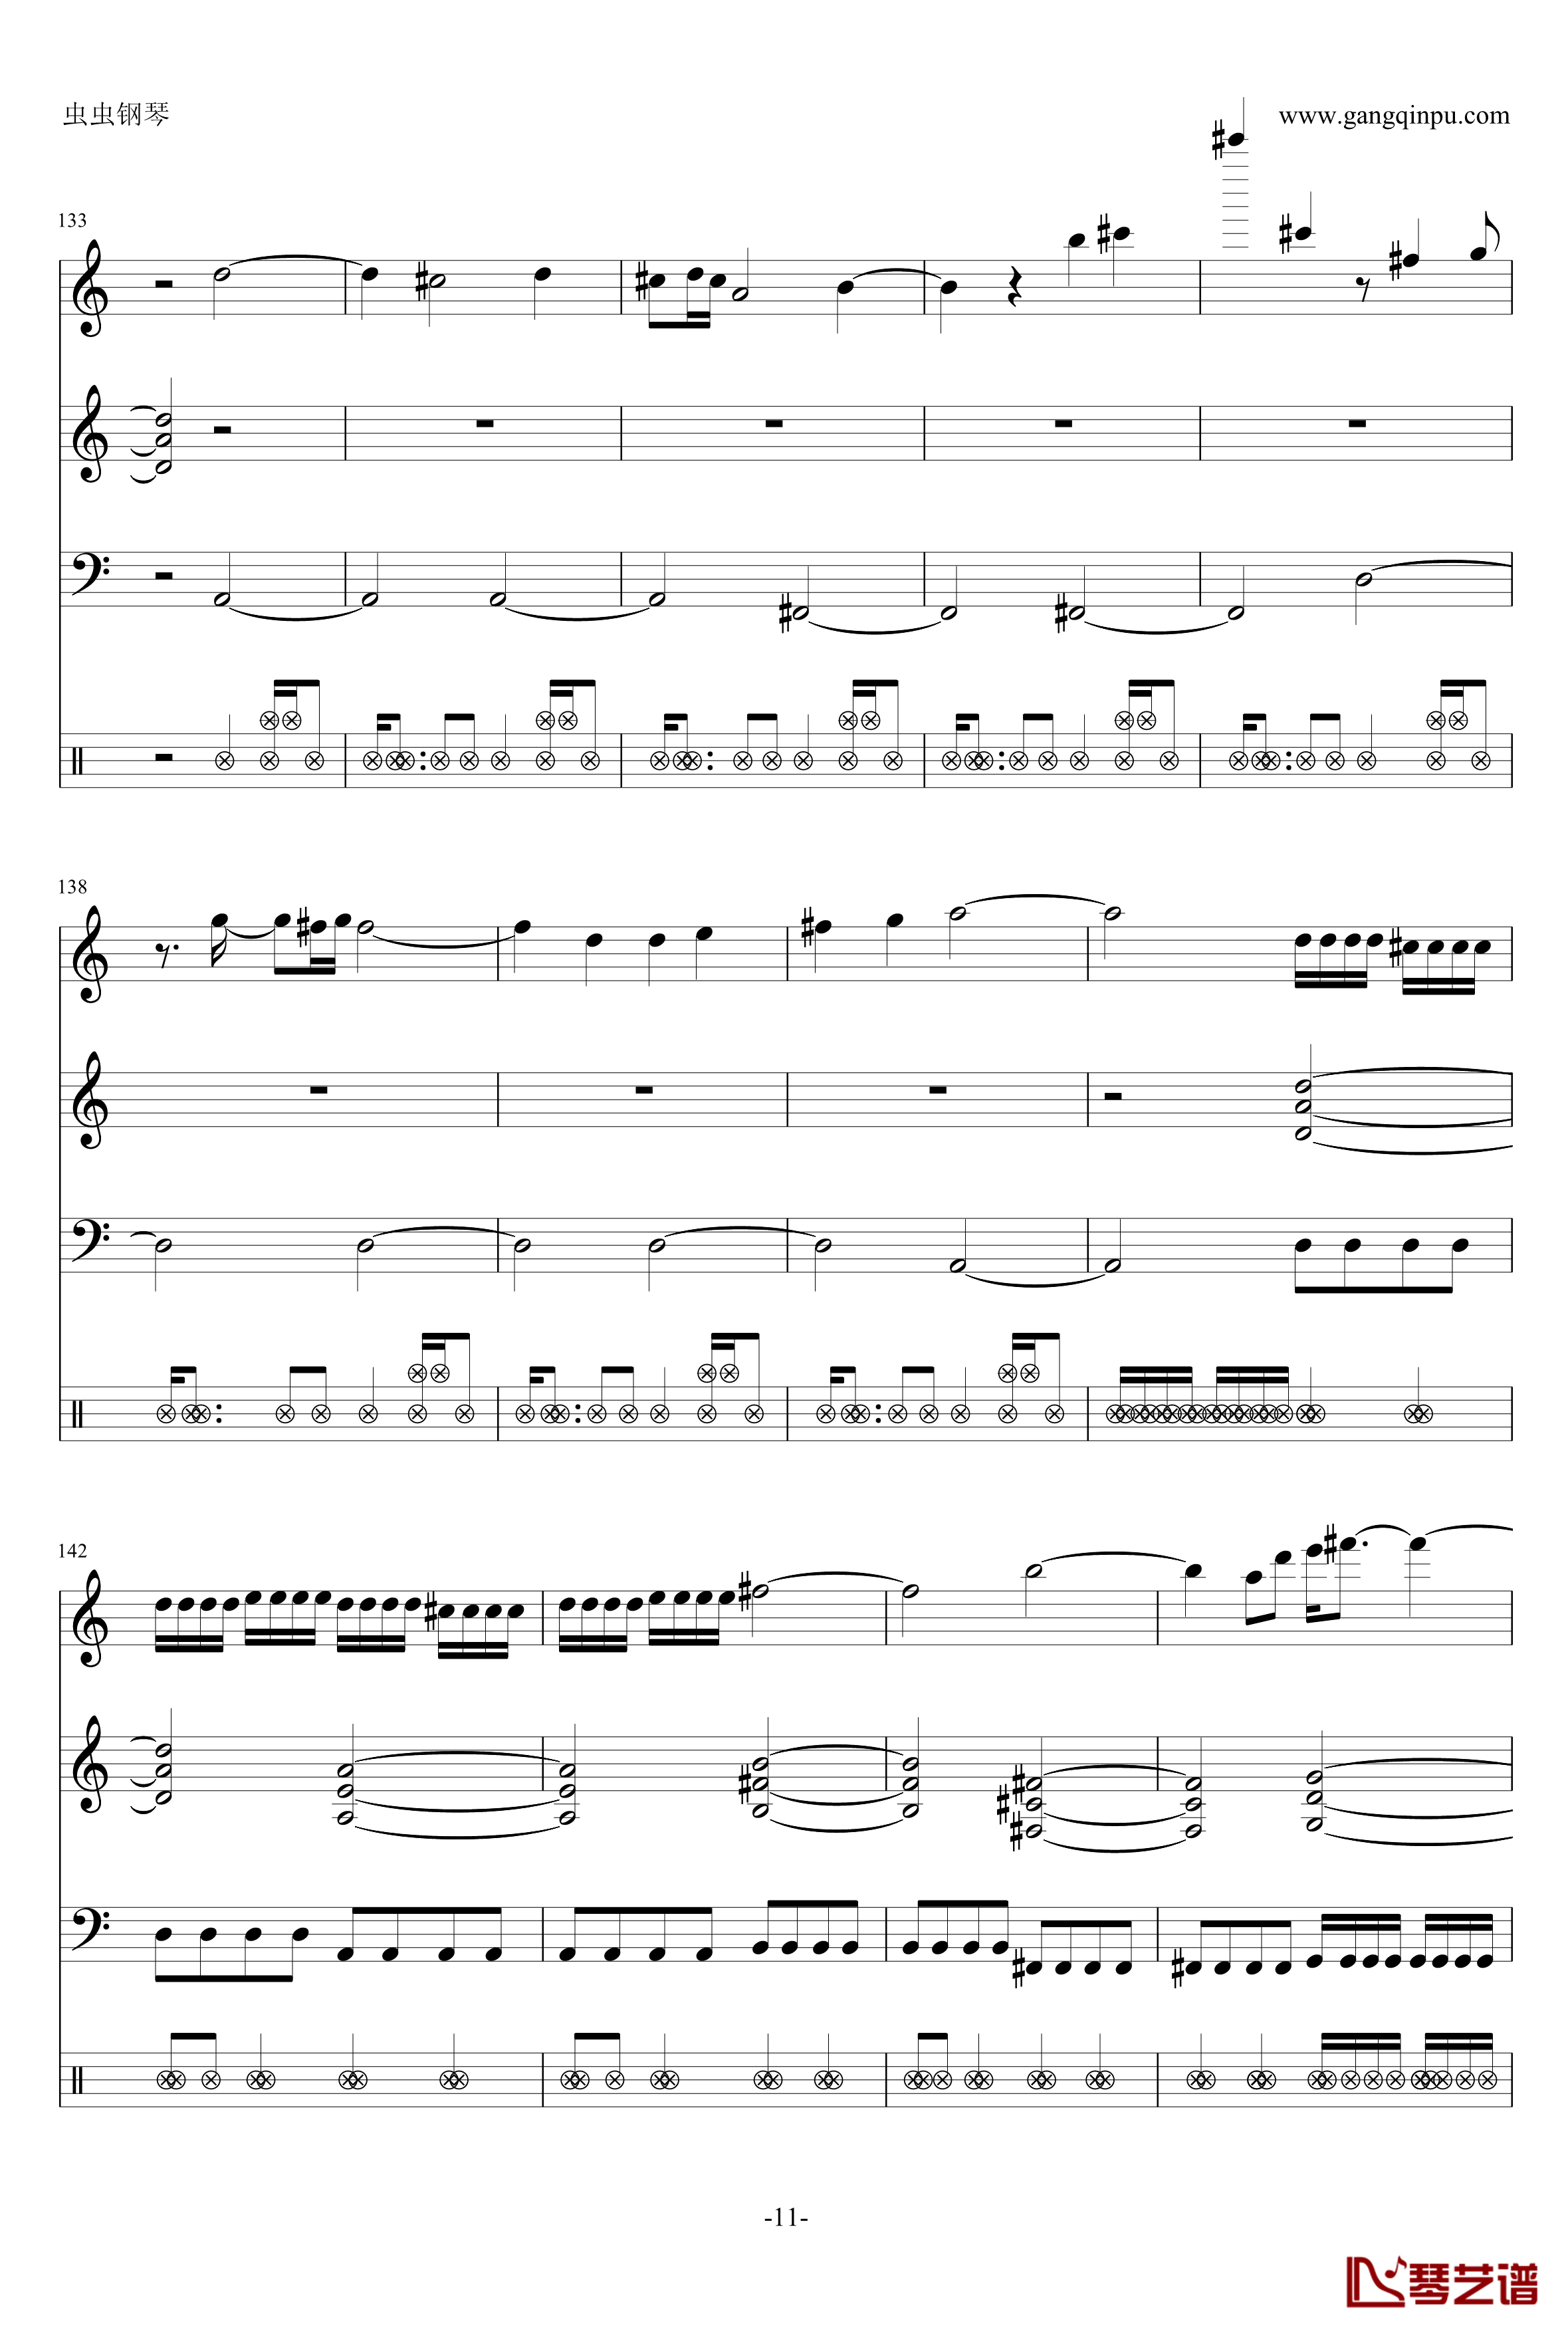 钢琴摇滚卡农钢琴谱-帕赫贝尔-Pachelbel11